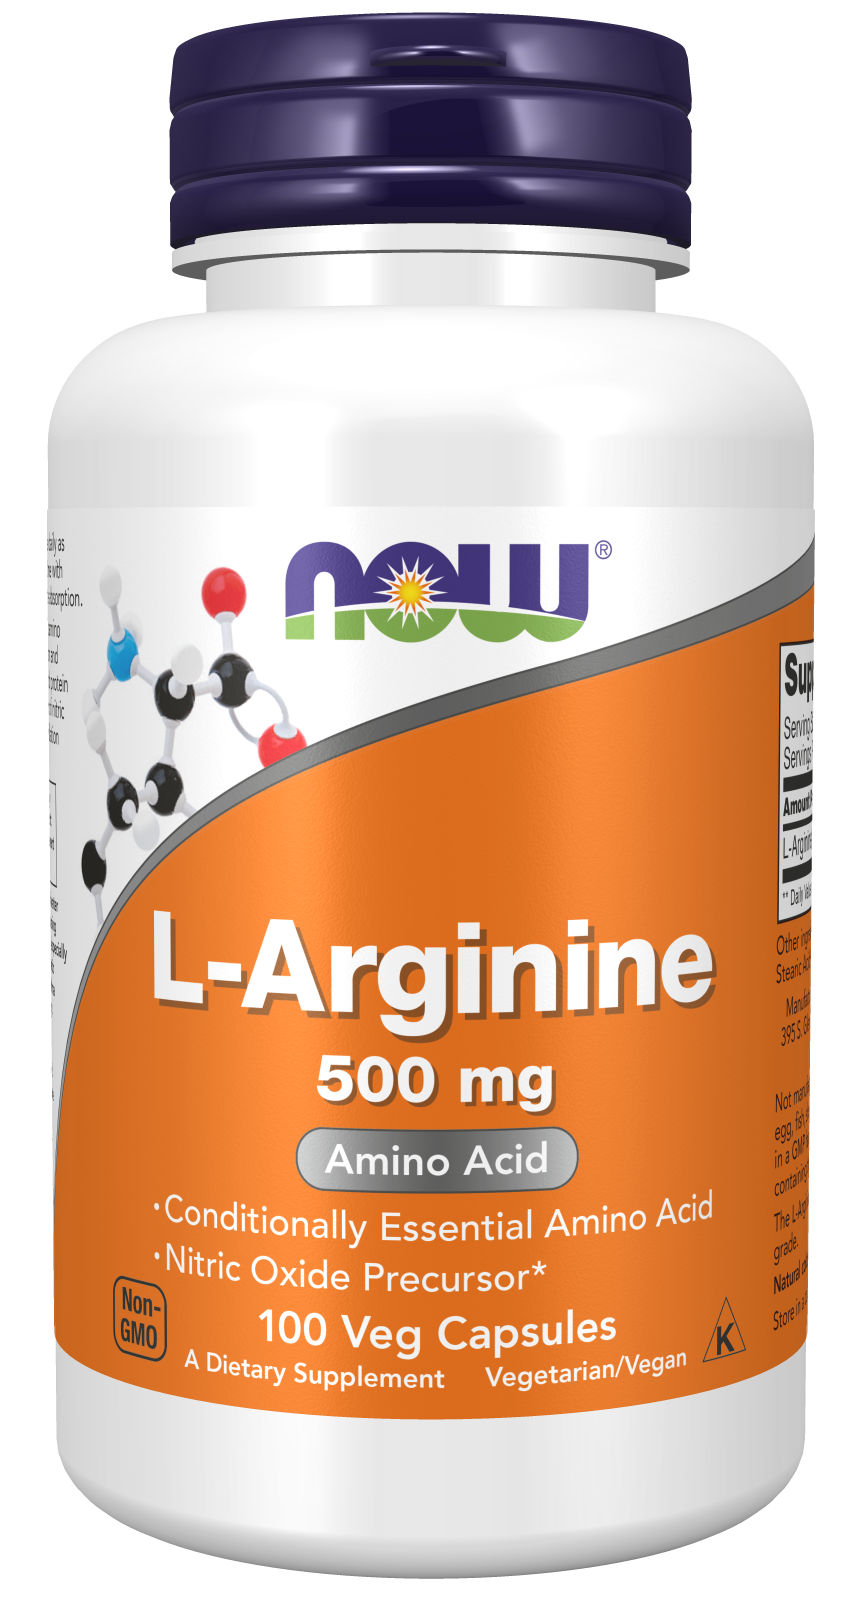 L-Arginine 500 mg - 100 Veg Capsules Bottle Front